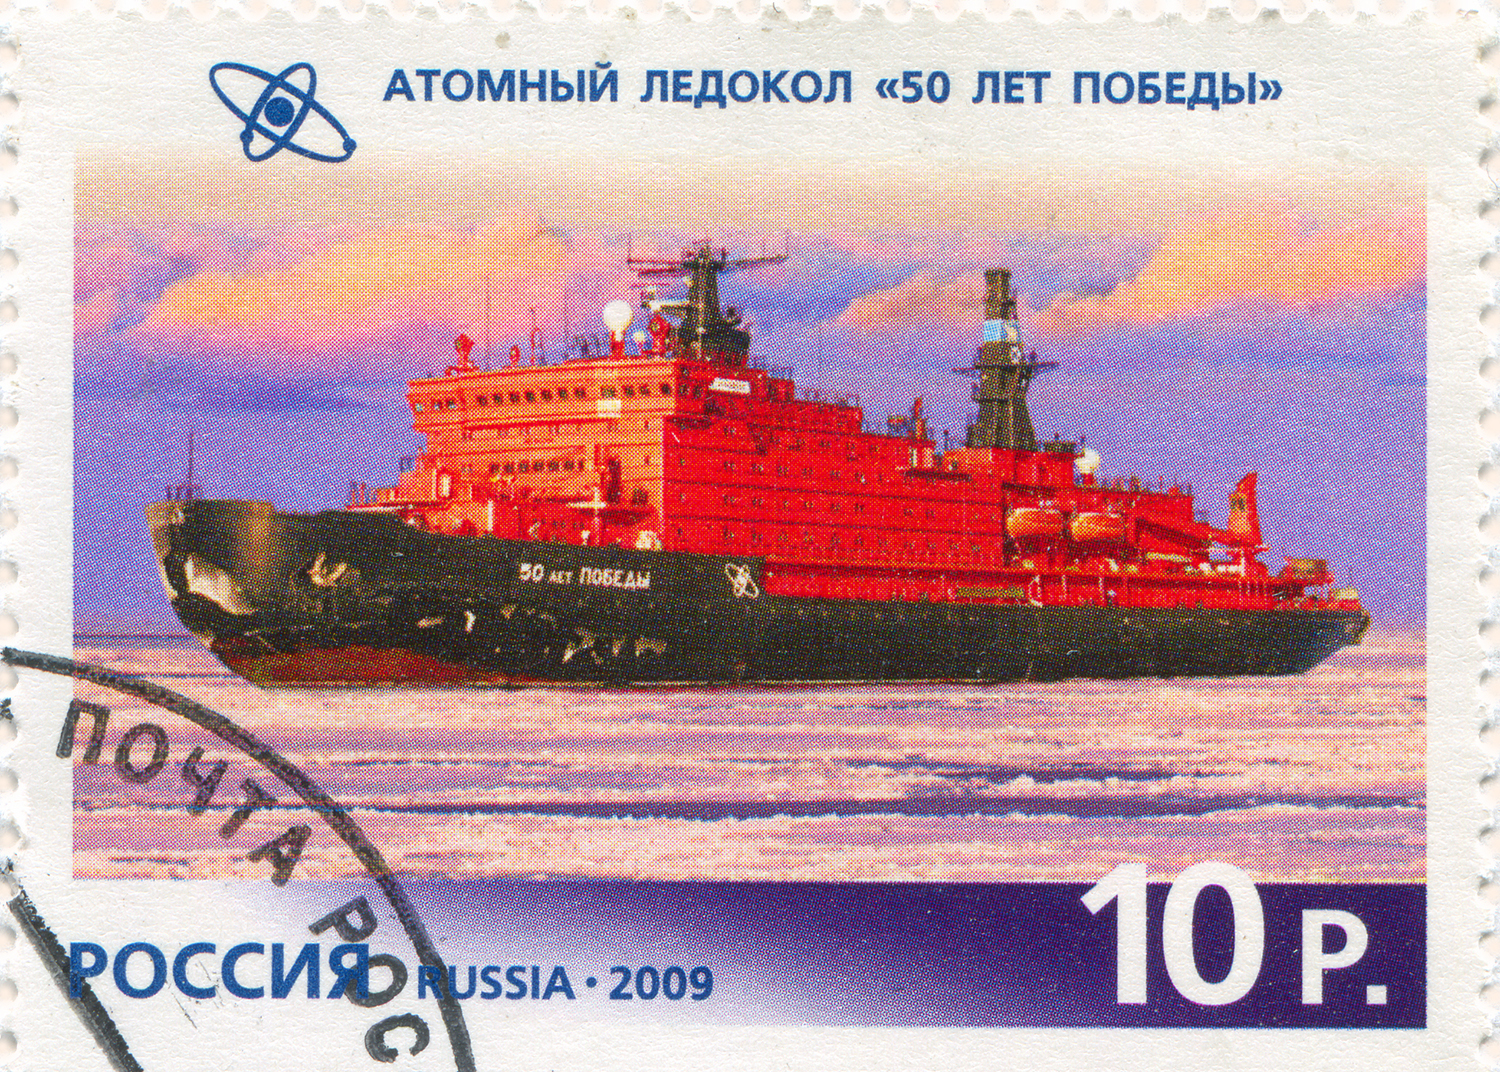 Un timbre-poste de 10p contenant une illustration d'un ballon avec une coque noire et des ponts rouges.